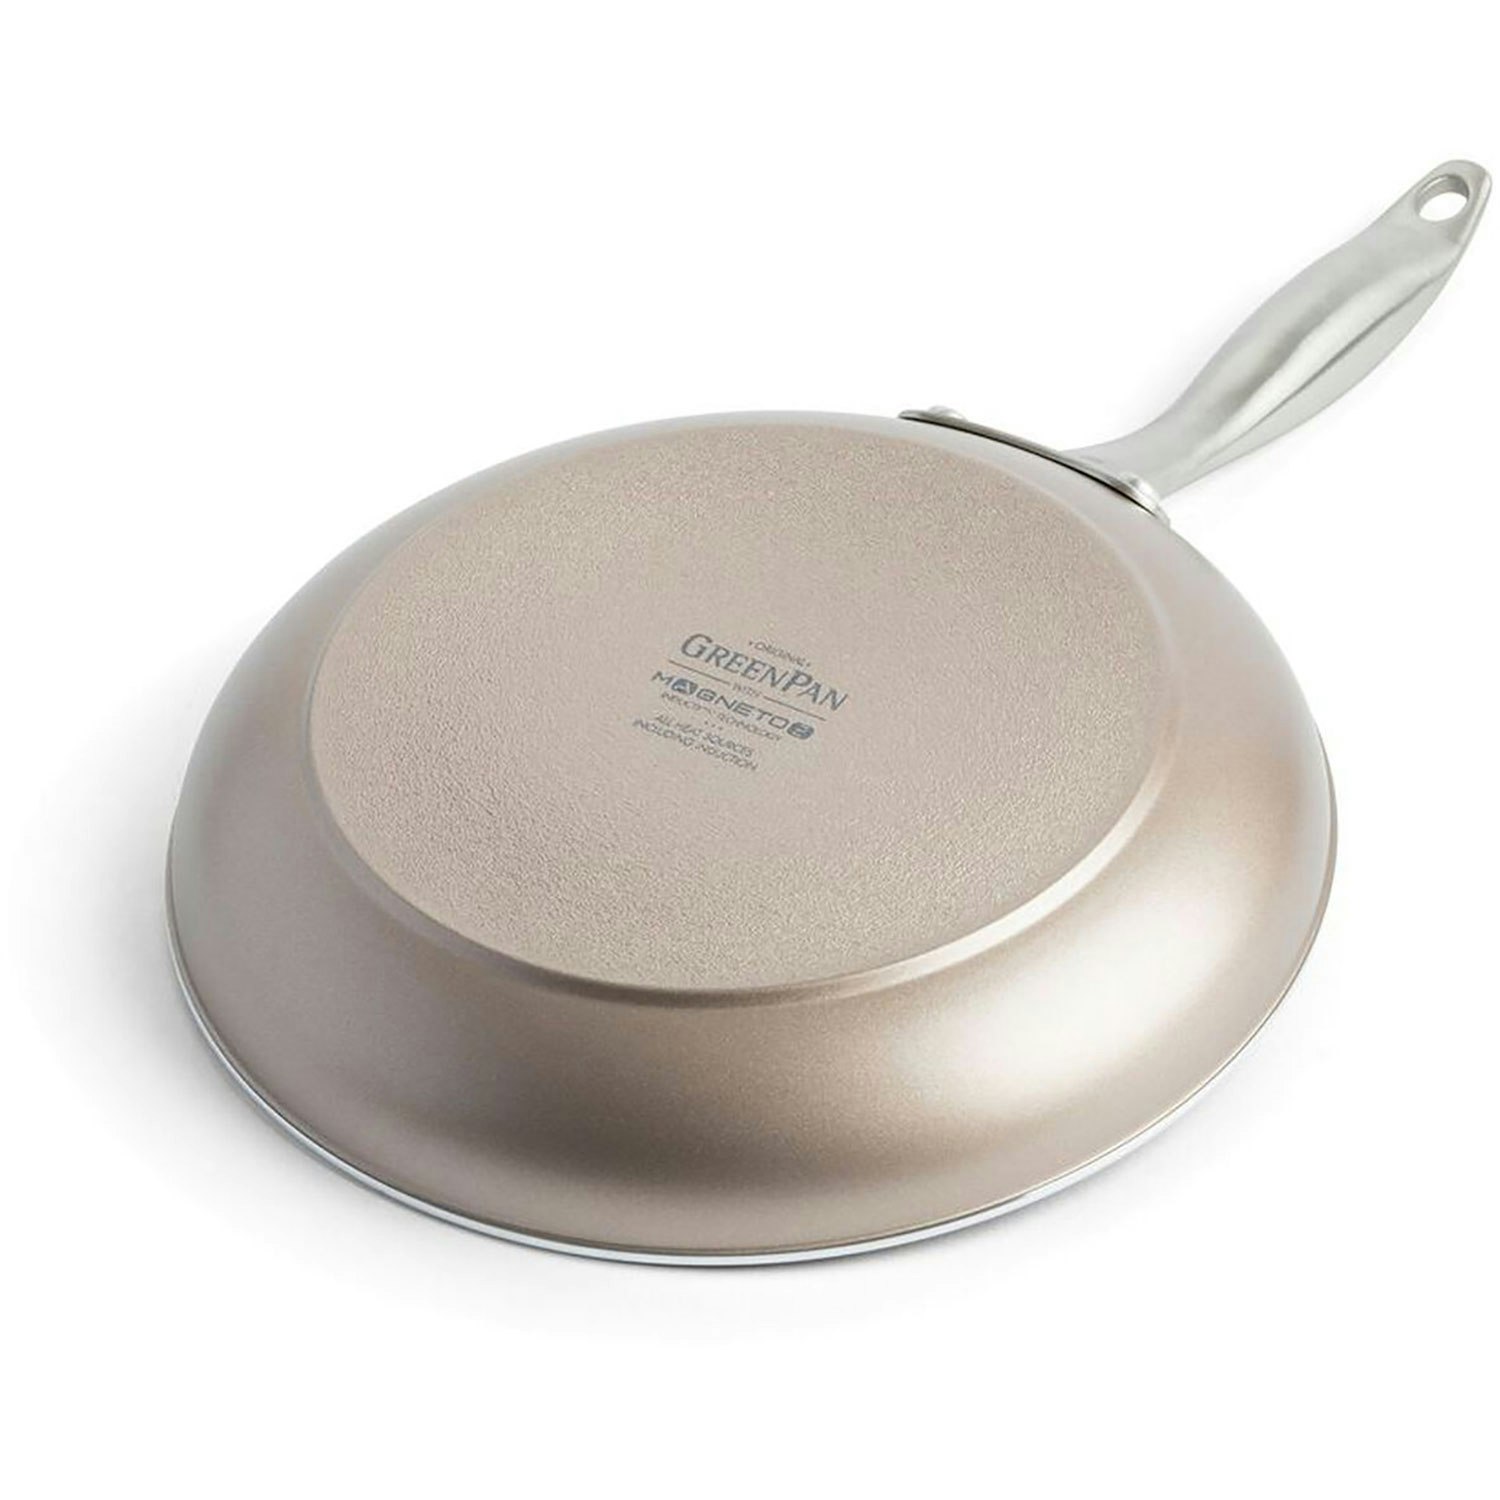 Craft Frying Pan 20 cm - GreenPan @ RoyalDesign